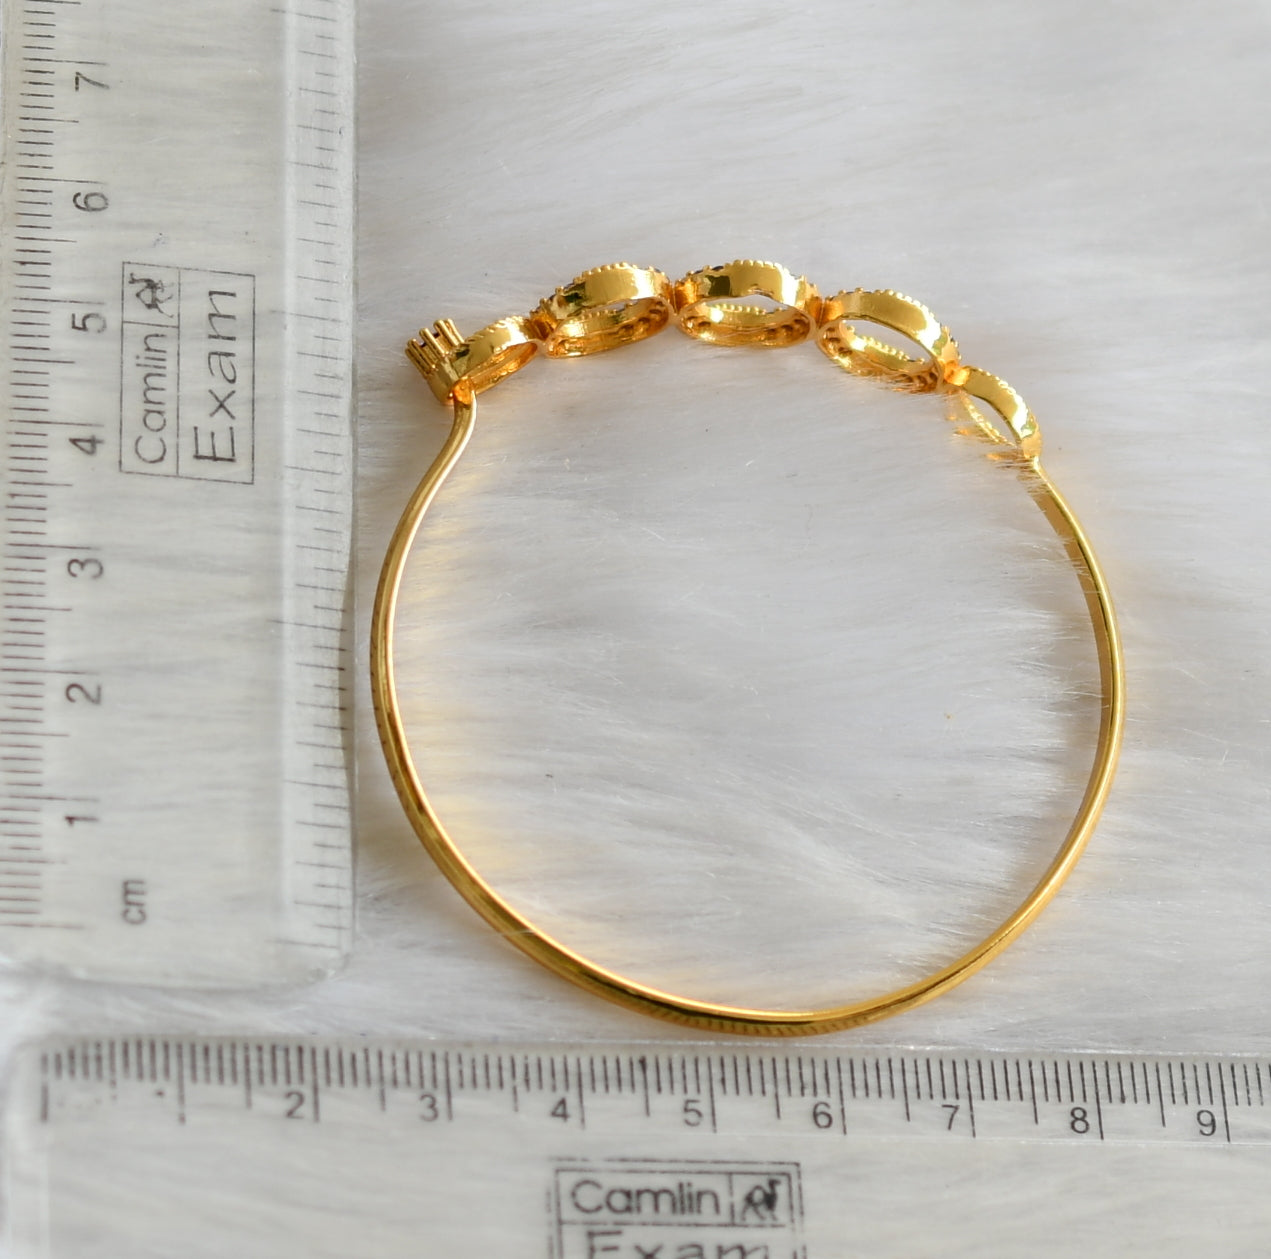 Round Round gold Design Men's Fashion Bracelet BR-128 – Rudraksh Art  Jewellery